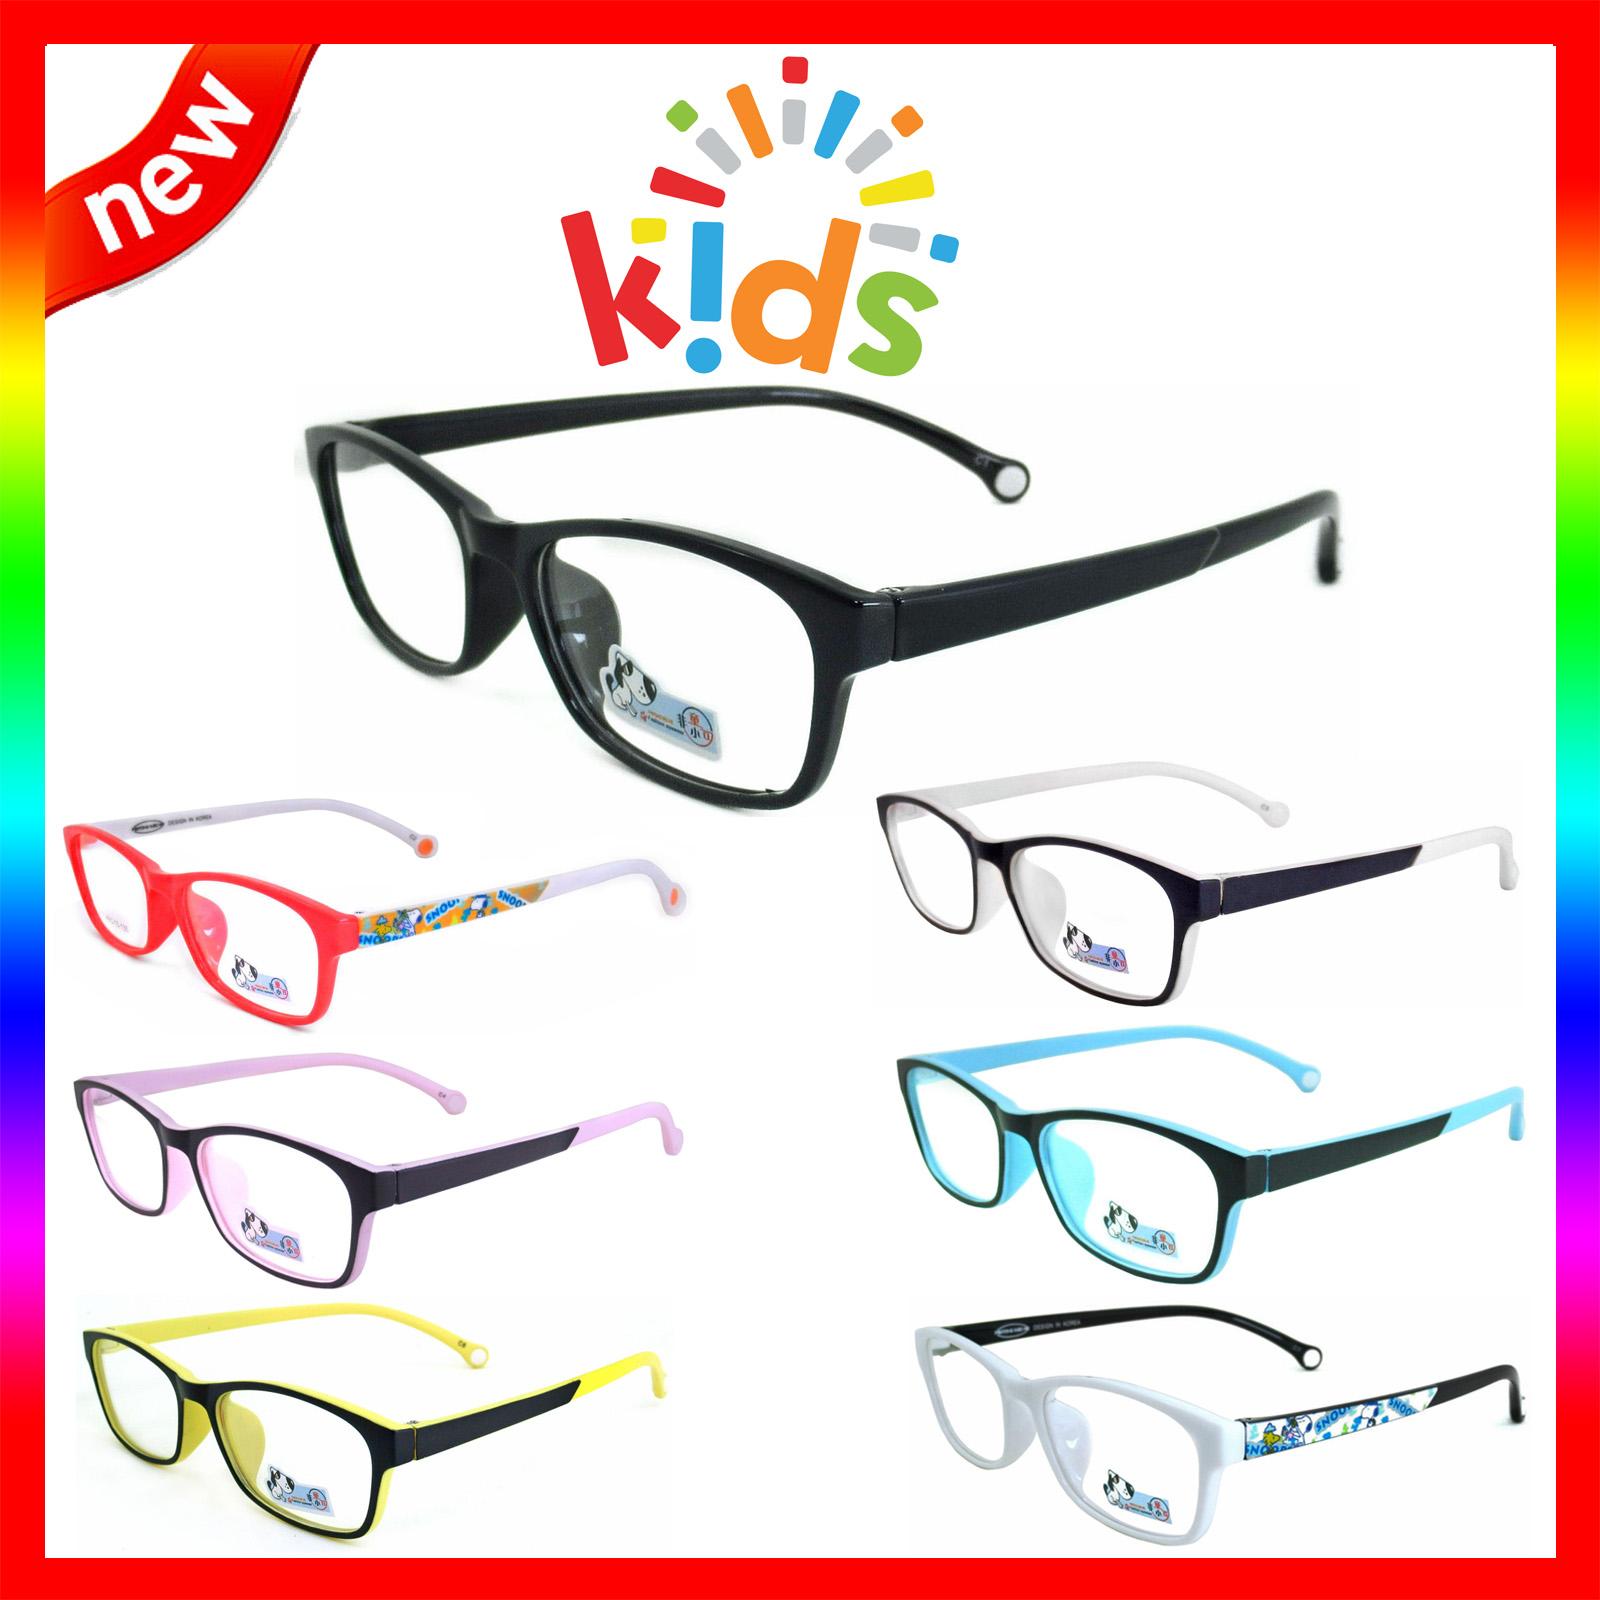 แว่นตาเกาหลีเด็ก Fashion Korea Children แว่นตาเด็ก รุ่น 217 กรอบแว่นตาเด็ก Rectangle ทรงสี่เหลี่ยมผืนผ้า Eyeglass baby frame ( สำหรับตัดเลนส์ ) วัสดุ PC เบา ขาข้อต่อ Kid leg joints Plastic Grade A material Eyewear Top Glasses